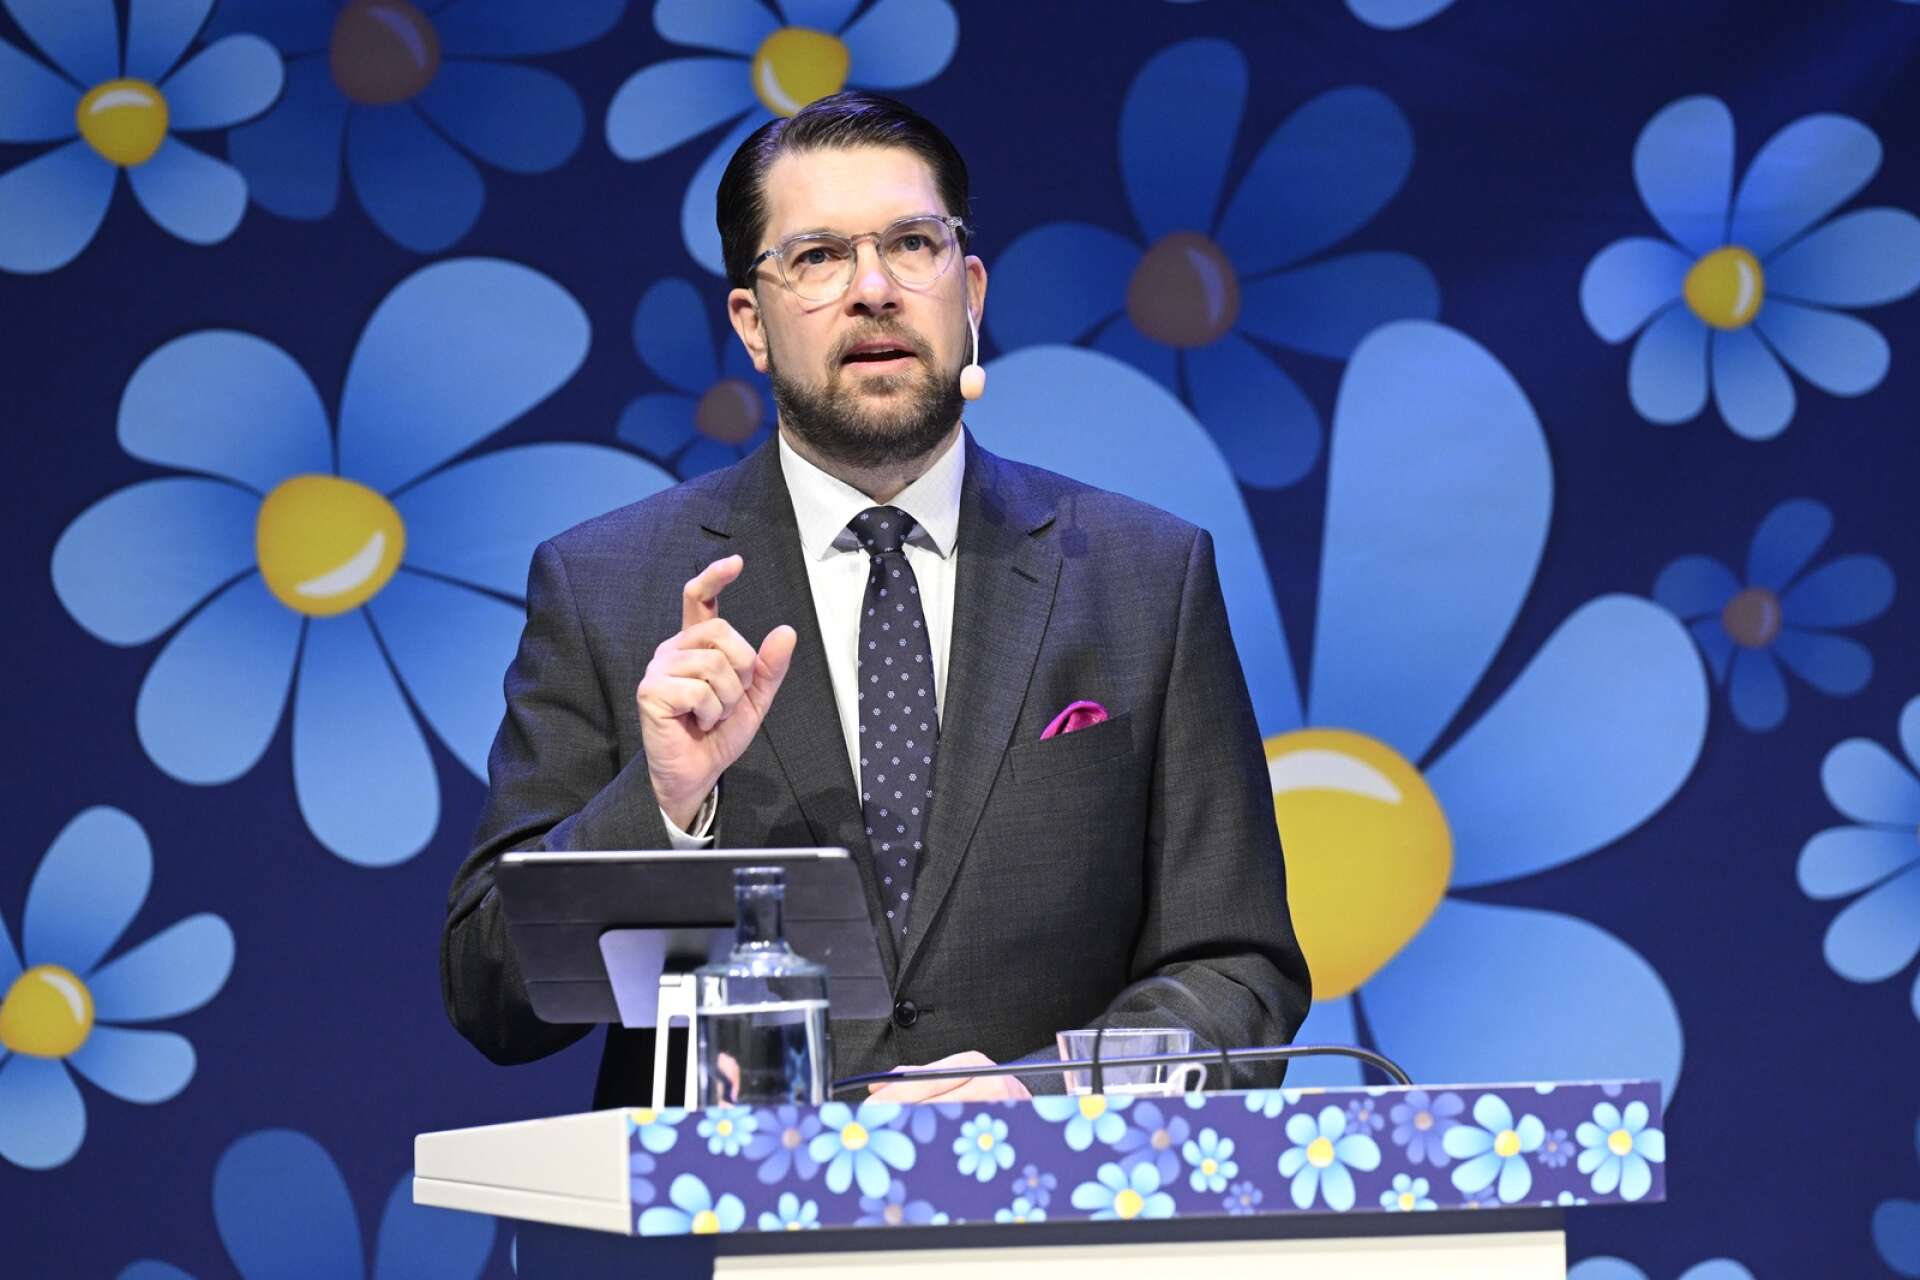 Vid Sverigedemokraternas landsdagar i Västerås i helgen kom partiledaren Jimmie Åkesson med ett mycket uppmärksammat och från många håll kritiserat moskéutspel.